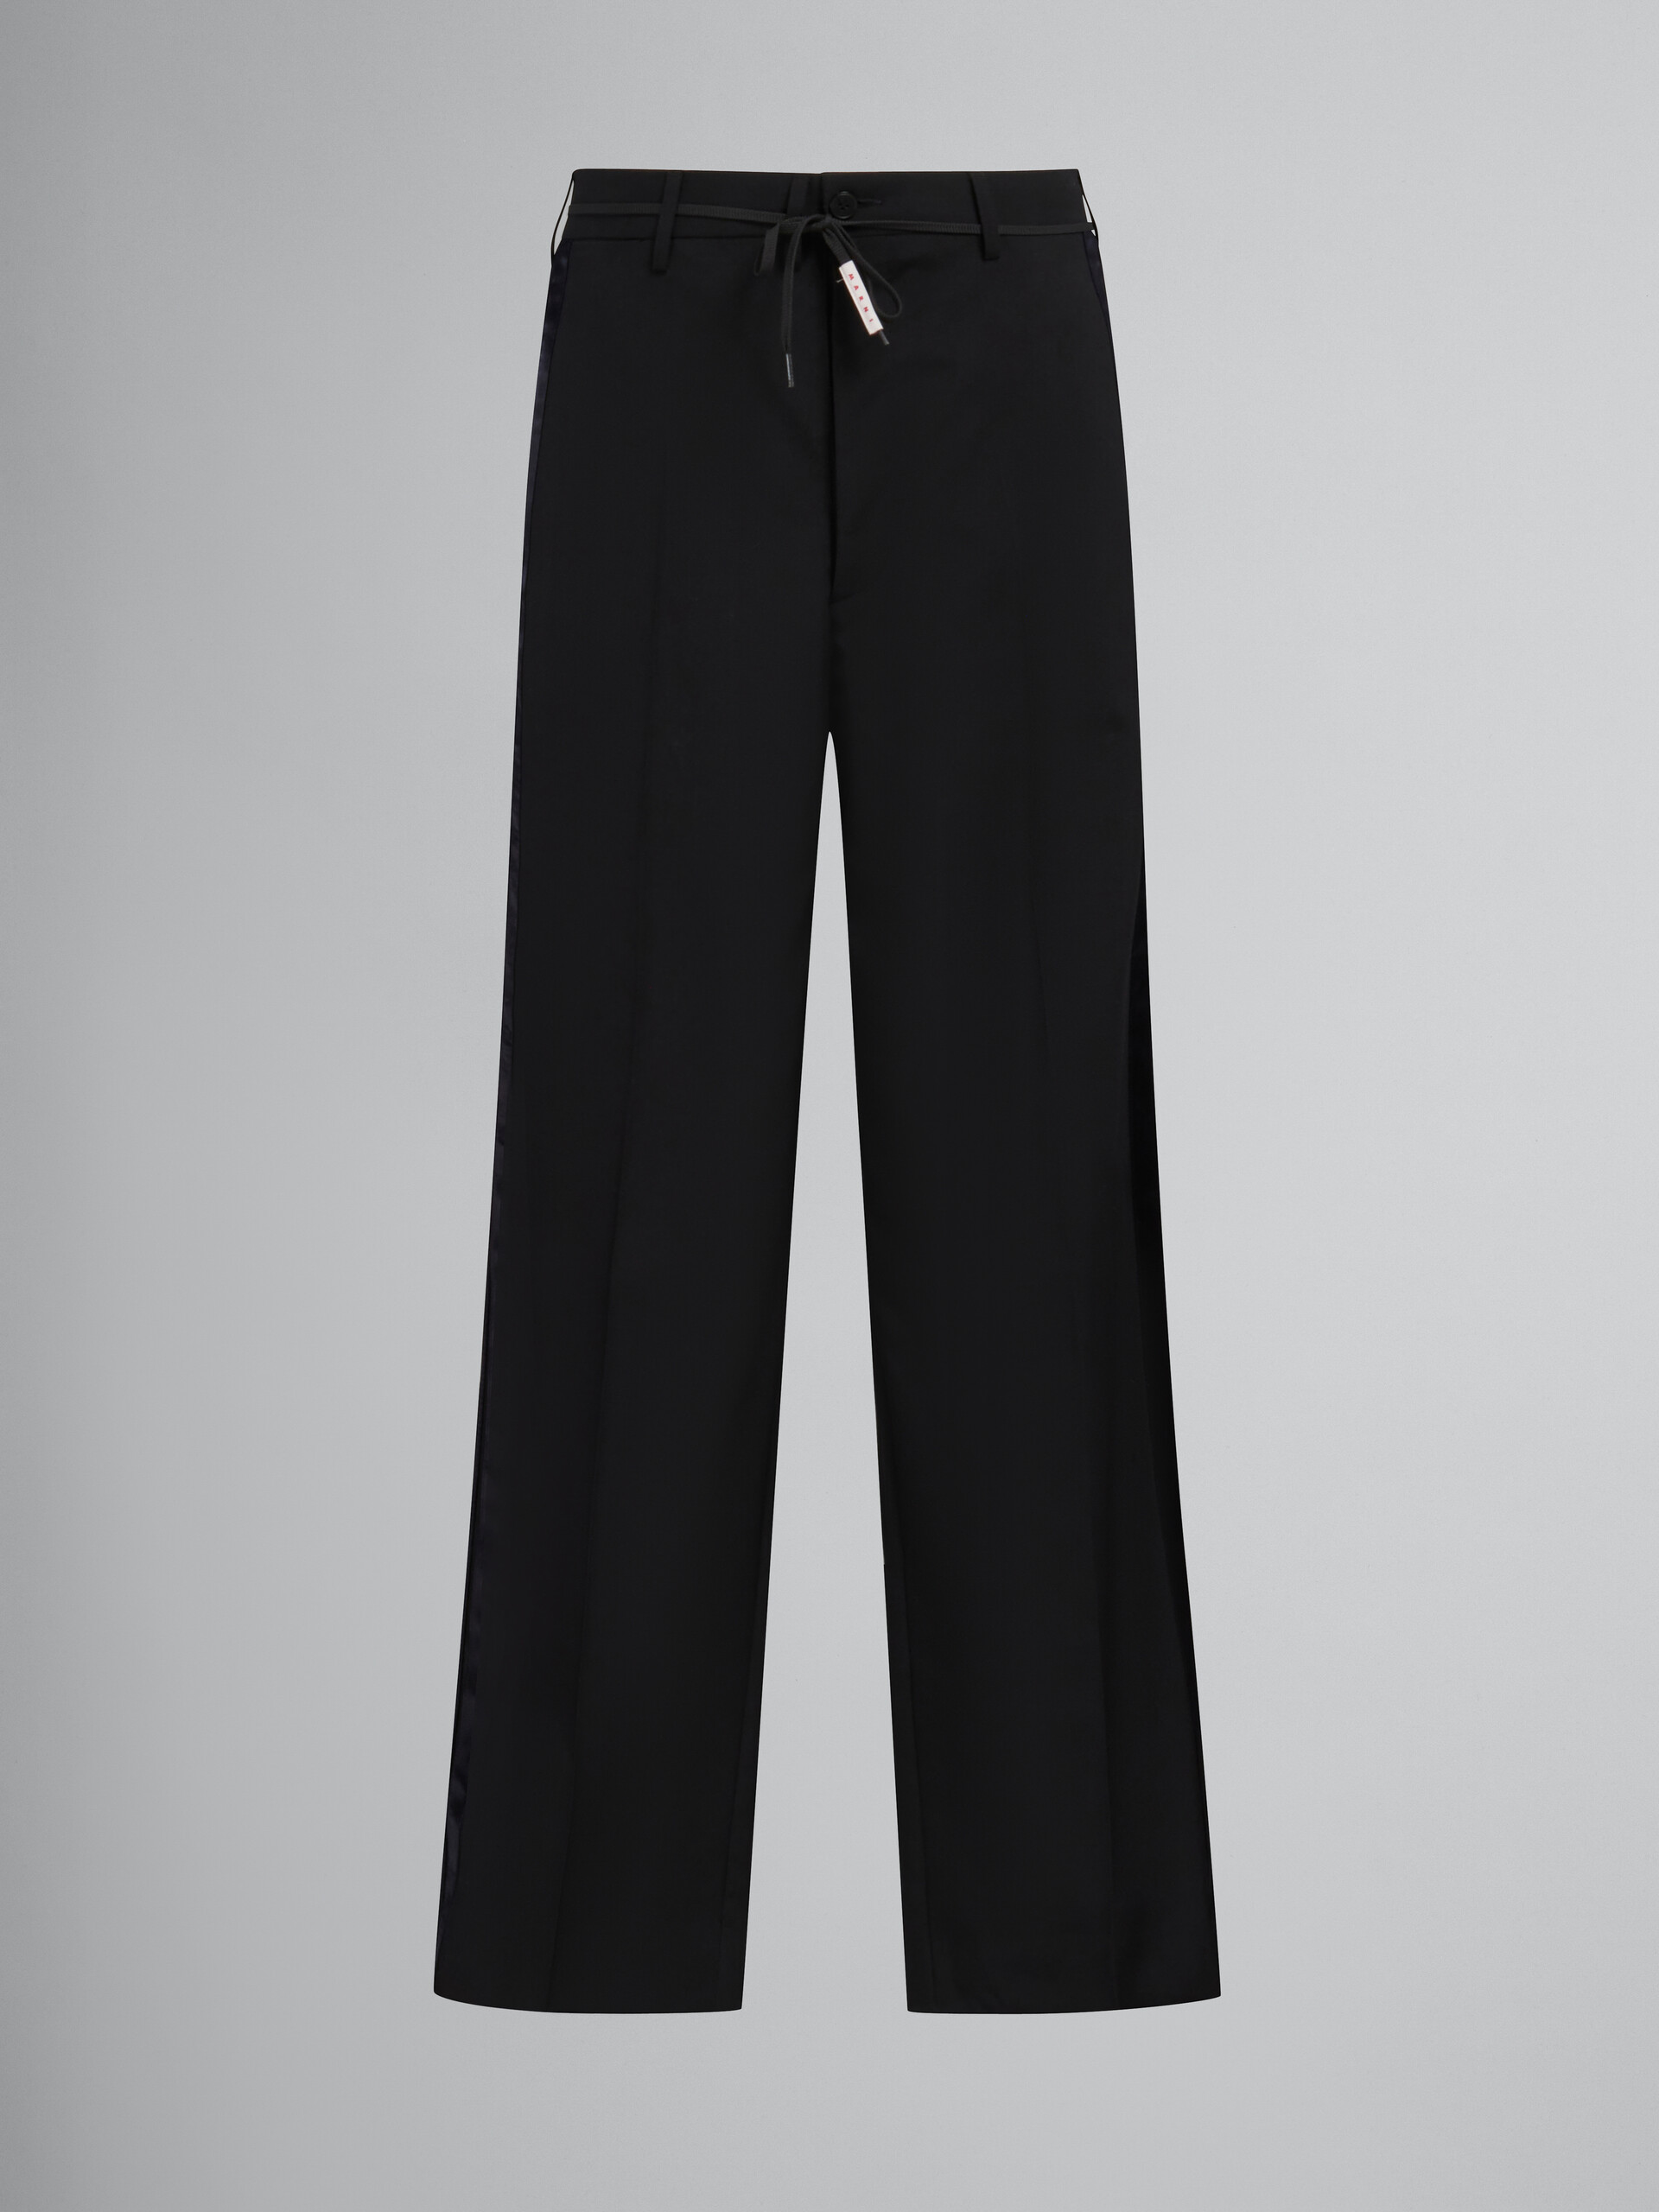 Schwarze Hose aus Tropenwolle mit Satinstreifen - Hosen - Image 1